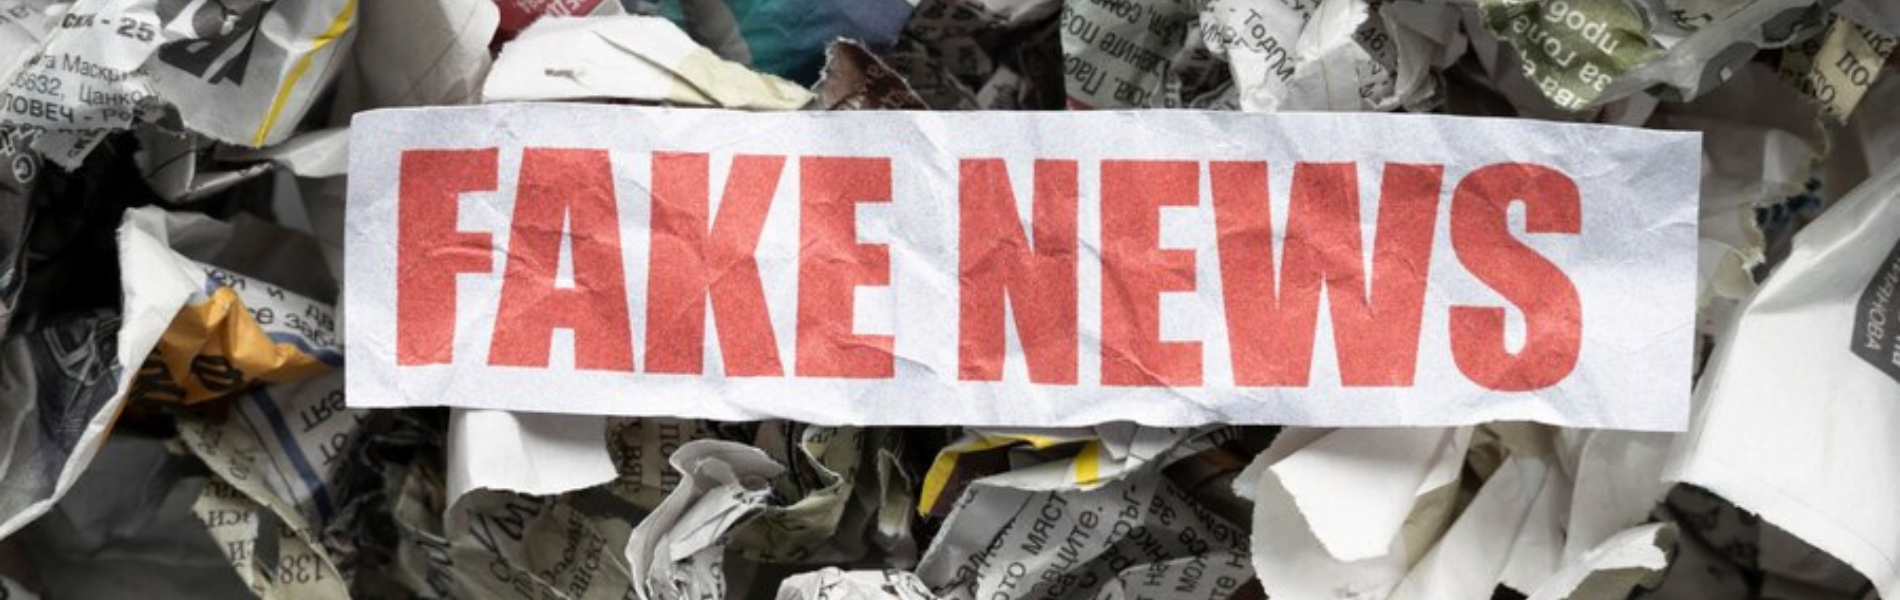 Faixa escrito "Fake News" sobre uma monte de papeis amassados